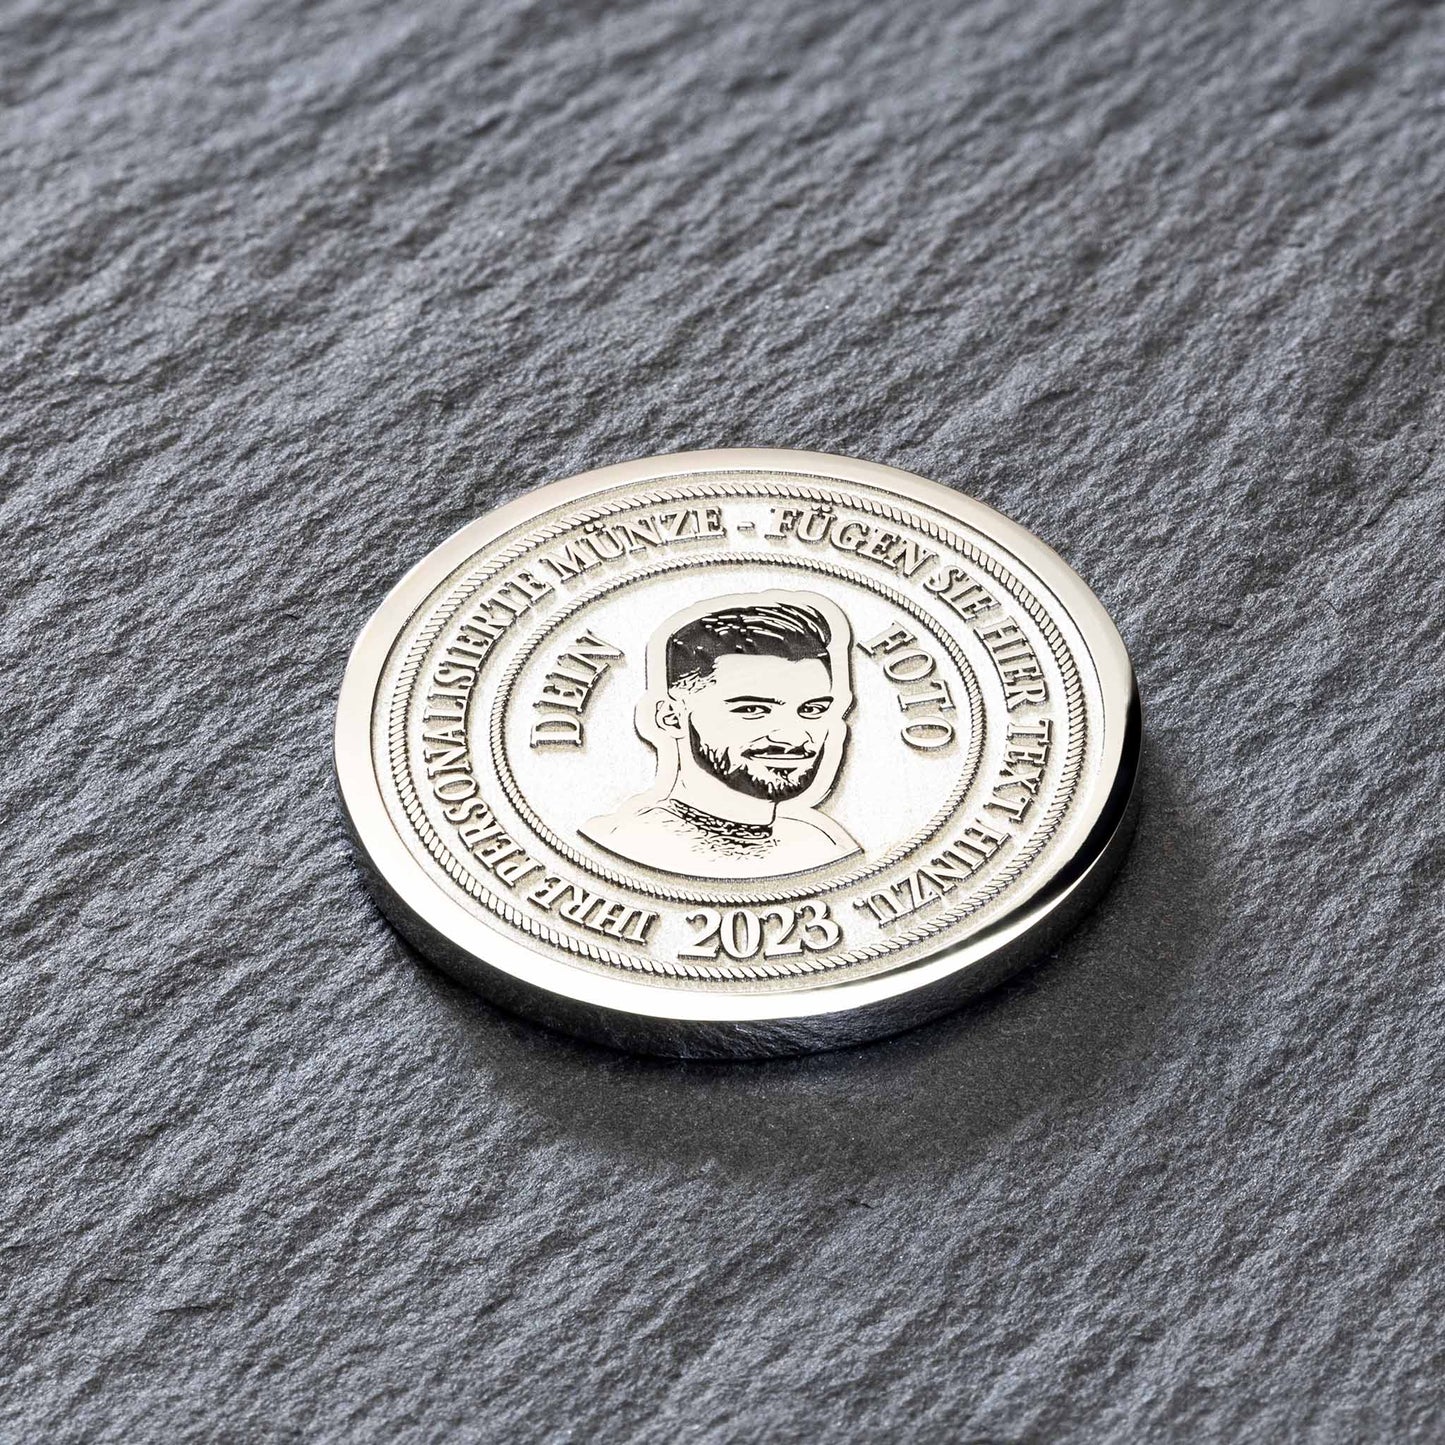 Personalisierte Münze mit eigenem Bild - seQua.Shop